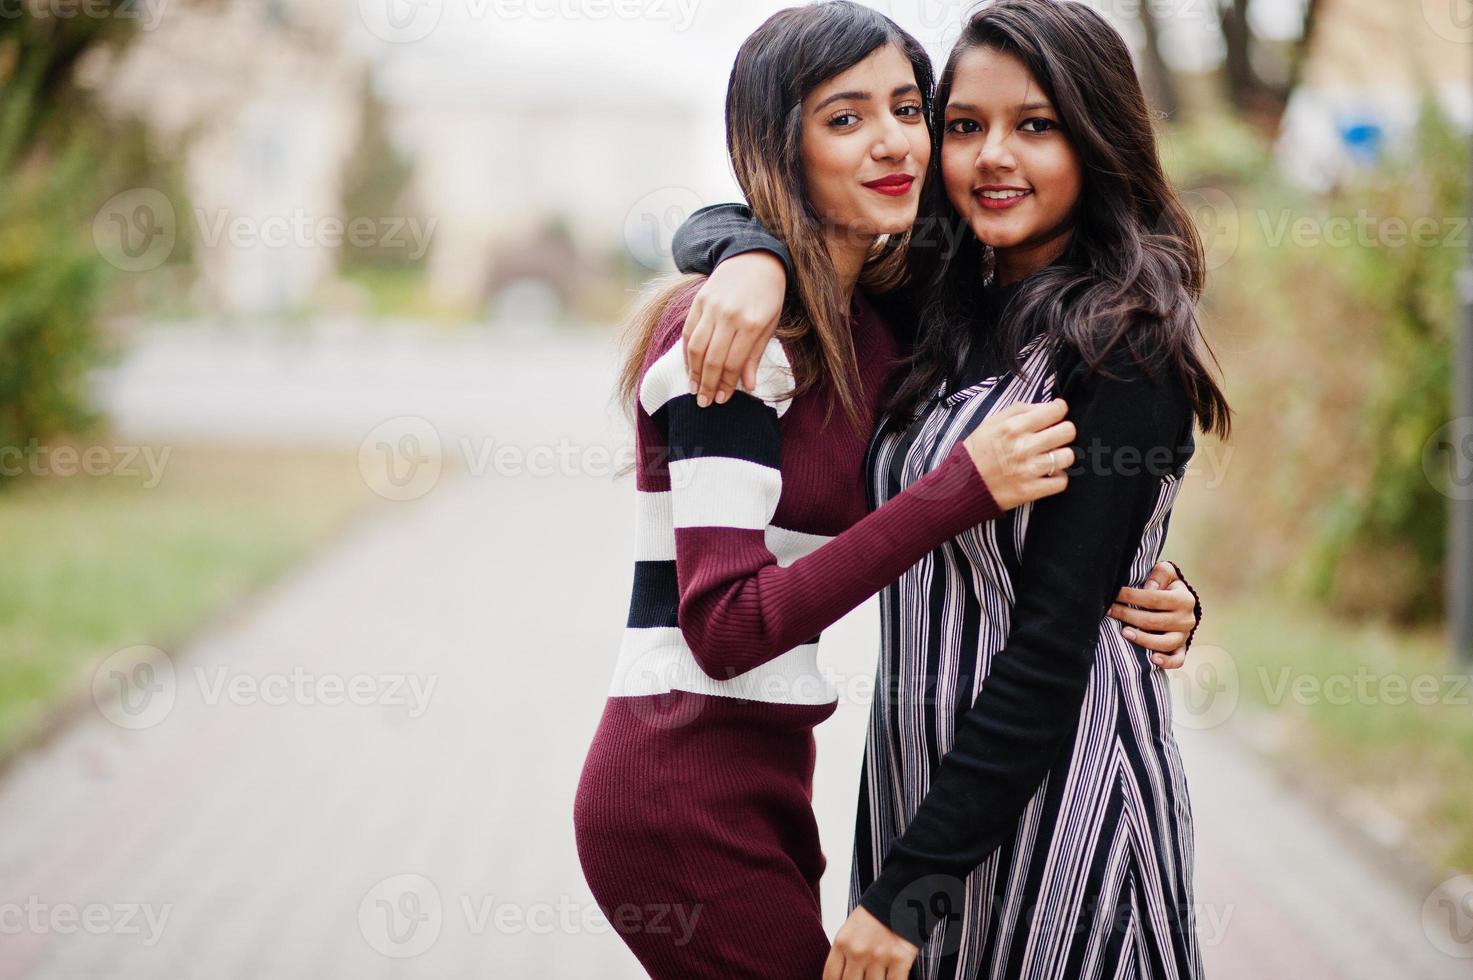 portret van twee jonge mooie Indiase of Zuid-Aziatische tienermeisjes in jurk die samen op straat lopen. foto